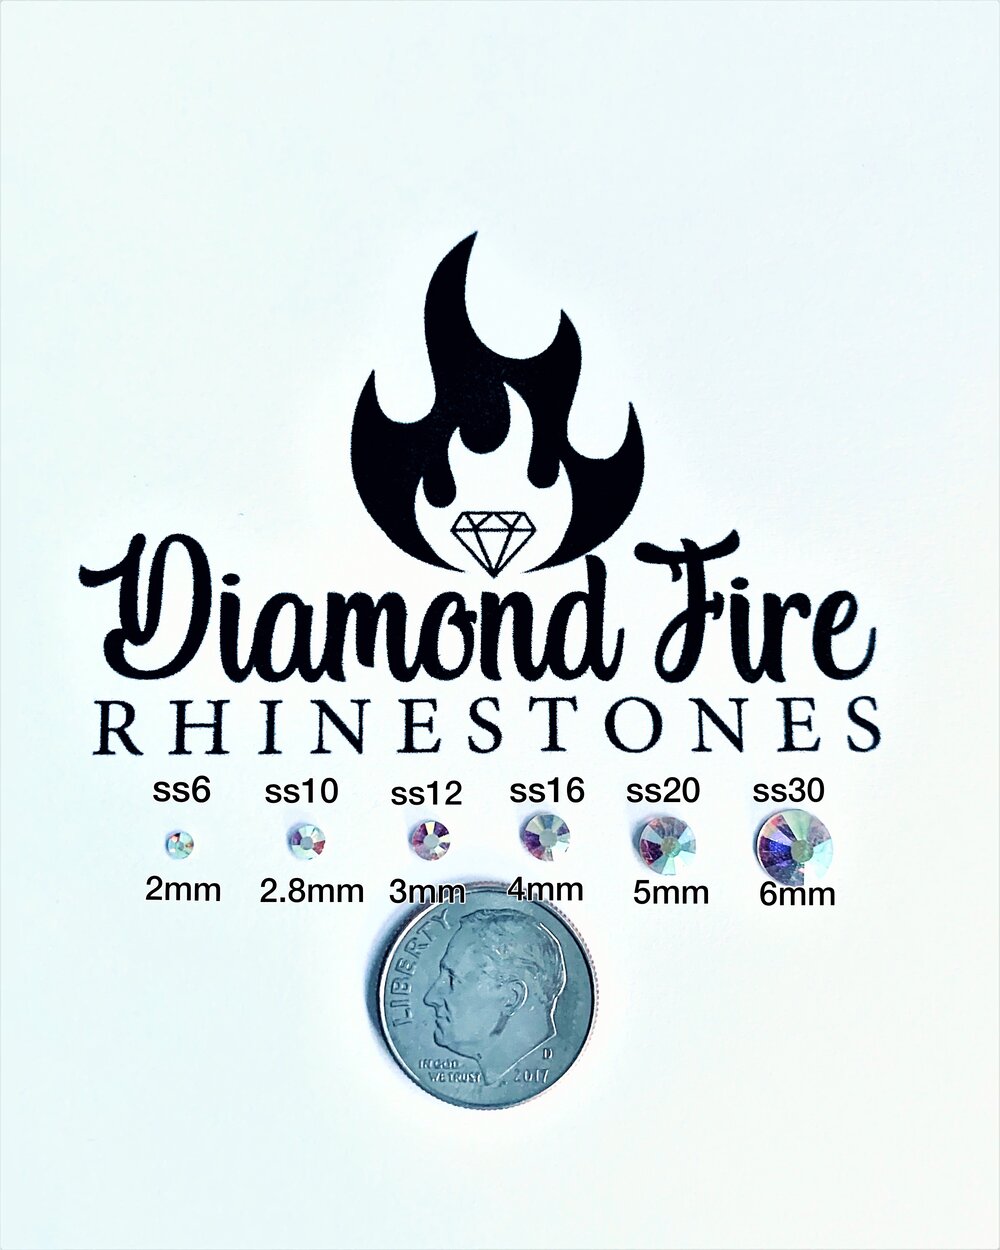 Hotfix 3mm Rhinestones in Lime Green by ThreadNanny